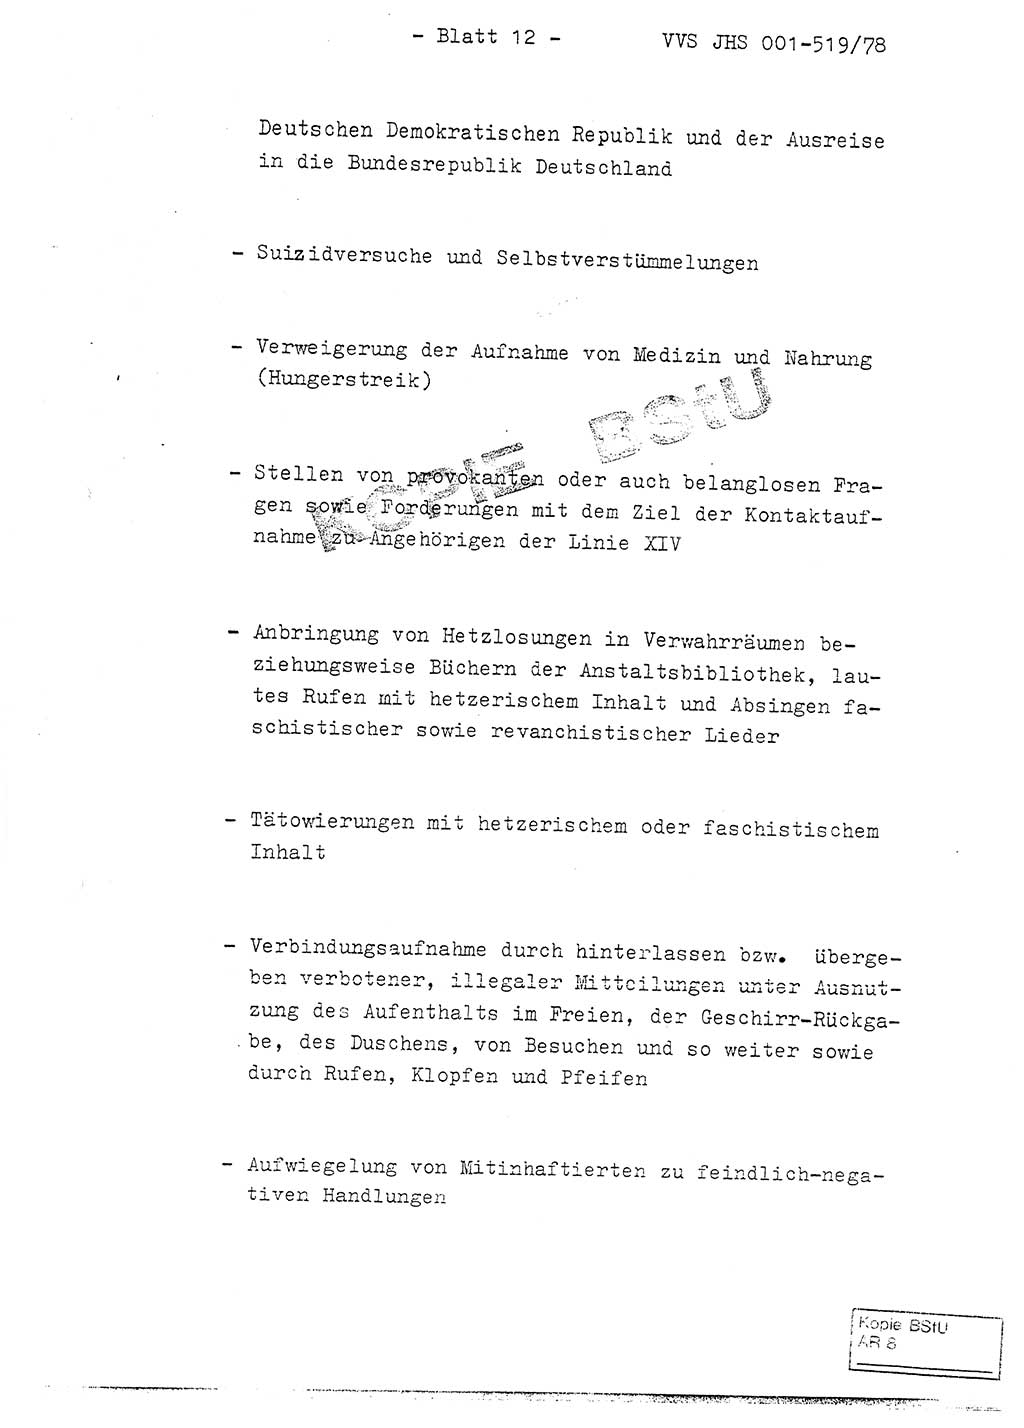 Fachschulabschlußarbeit Hauptmann Alfons Lützelberger (Abt. ⅩⅣ), Ministerium für Staatssicherheit (MfS) [Deutsche Demokratische Republik (DDR)], Juristische Hochschule (JHS), Vertrauliche Verschlußsache (VVS) 001-519/78, Potsdam 1978, Blatt 12 (FS-Abschl.-Arb. MfS DDR JHS VVS 001-519/78 1978, Bl. 12)